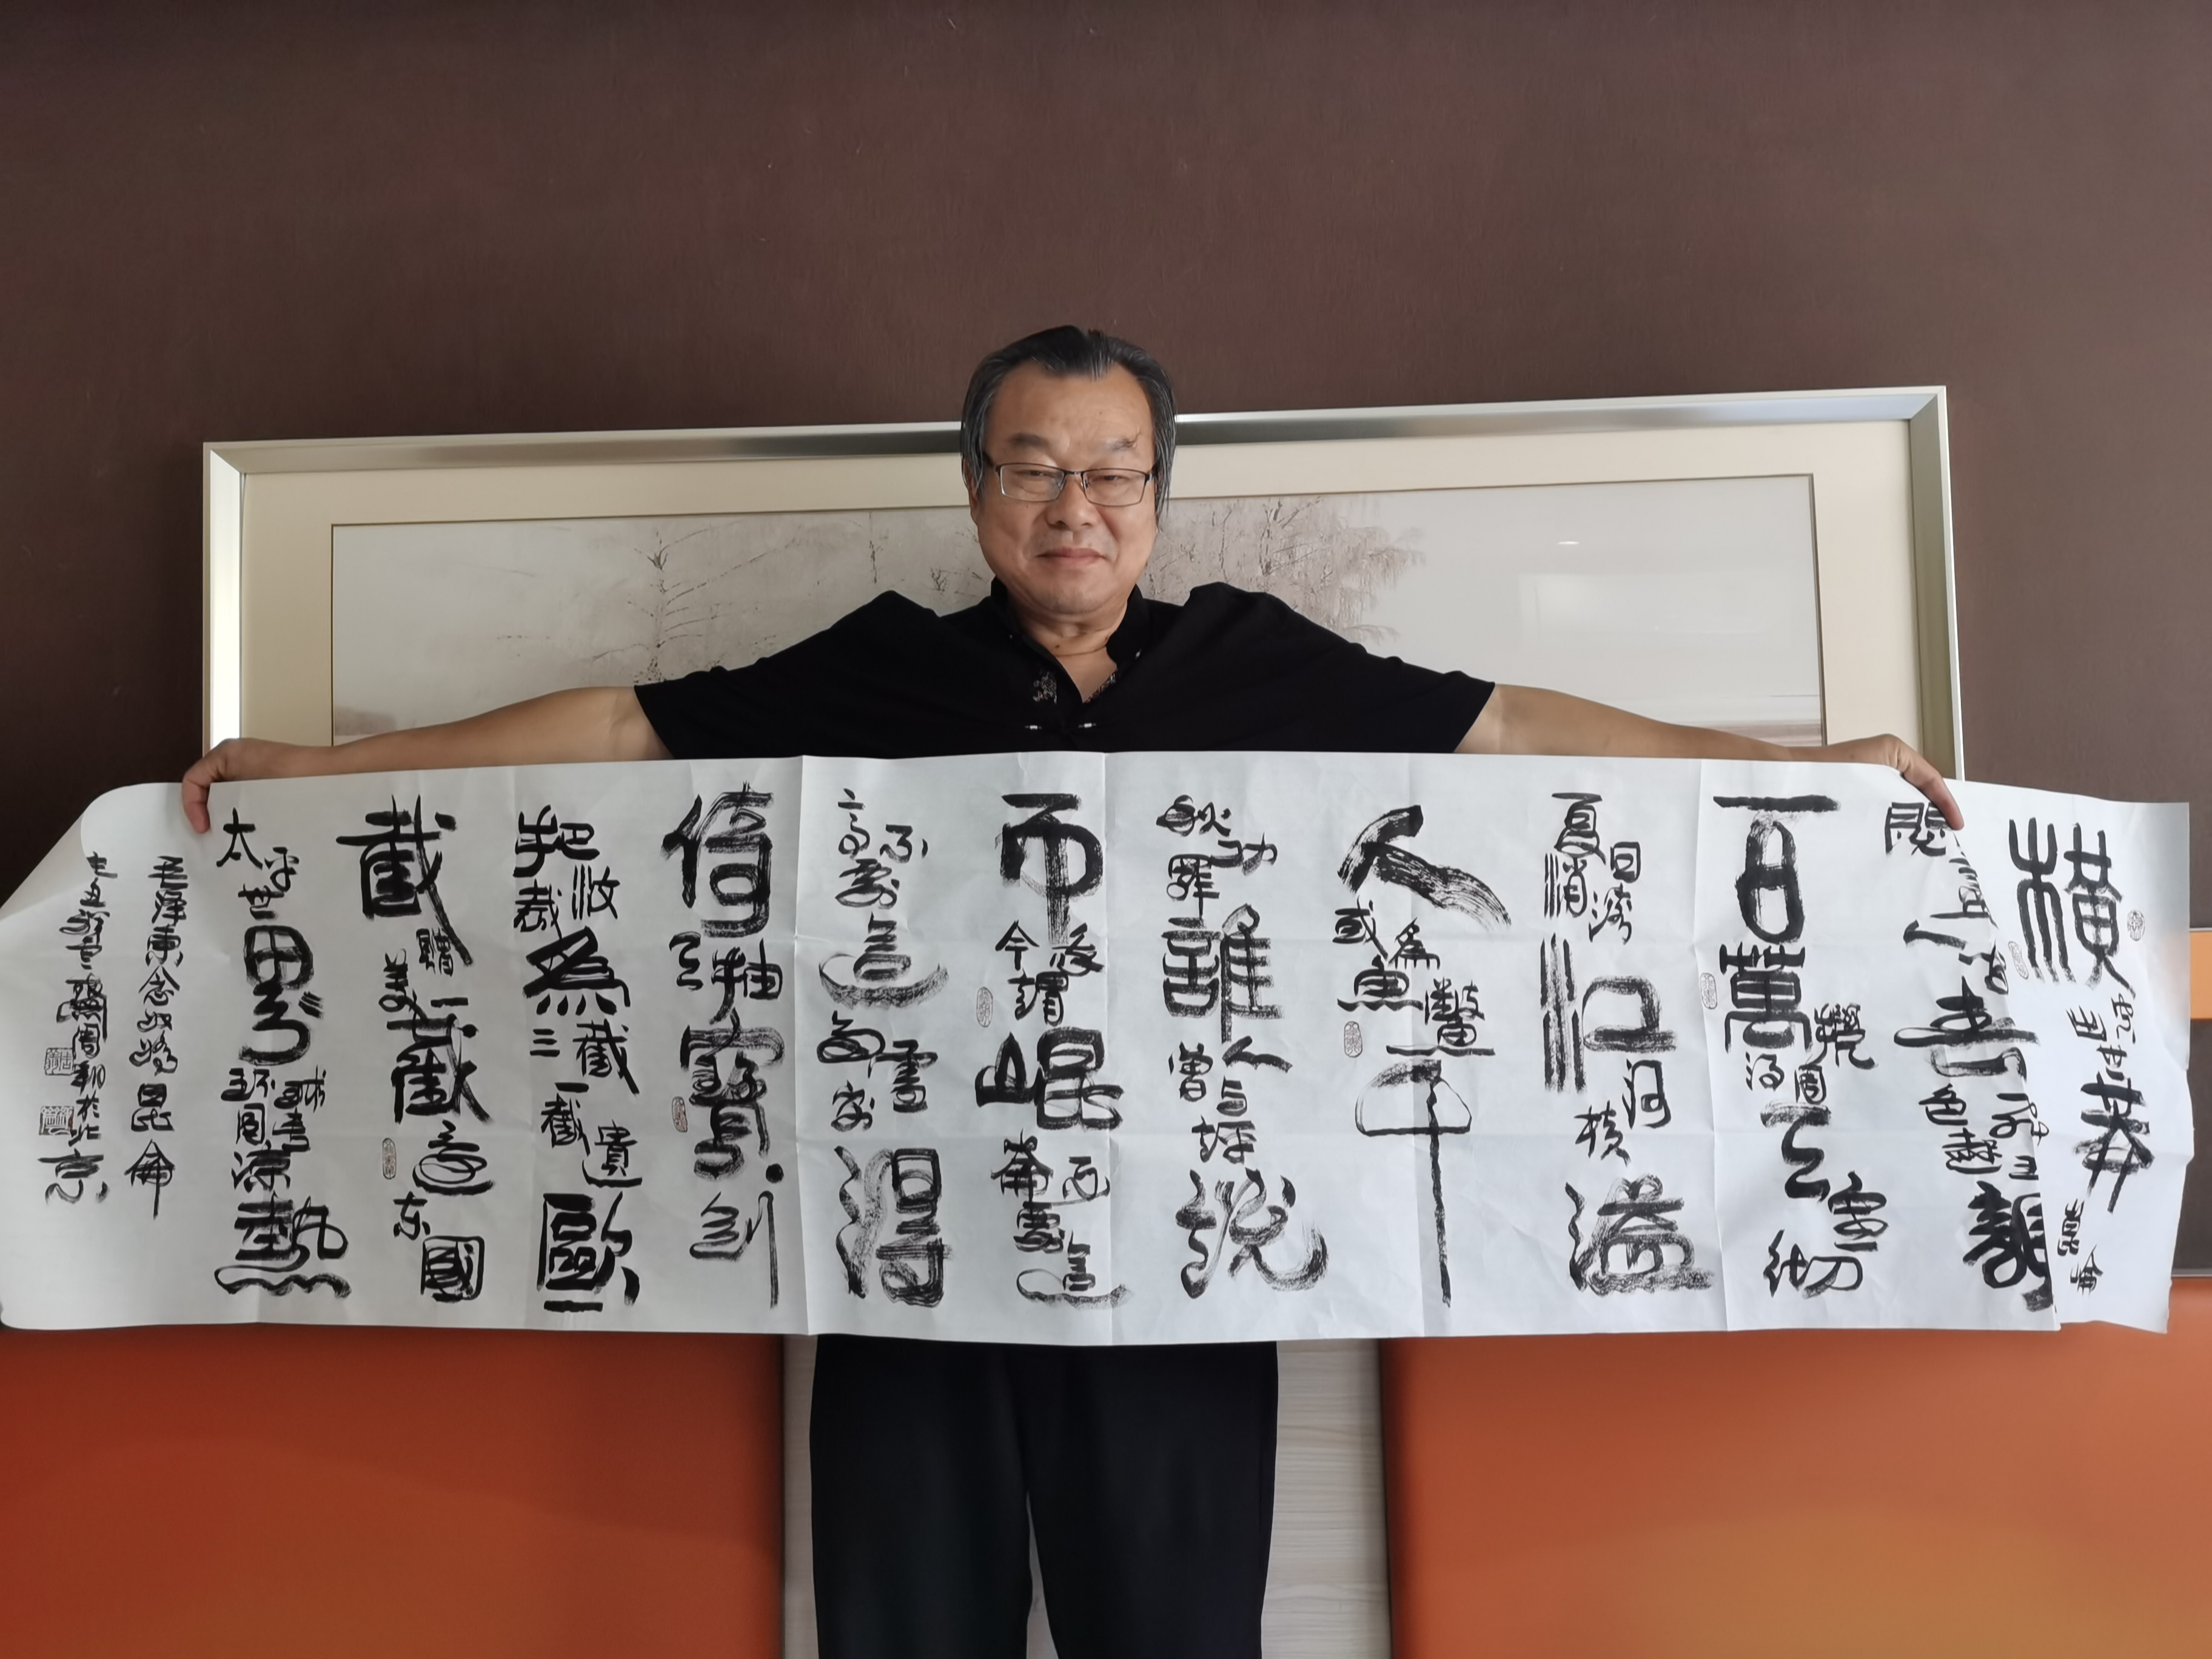 翰墨飘香颂党恩 深情缅怀毛泽东一一艺术家纪念毛主席逝世45周年